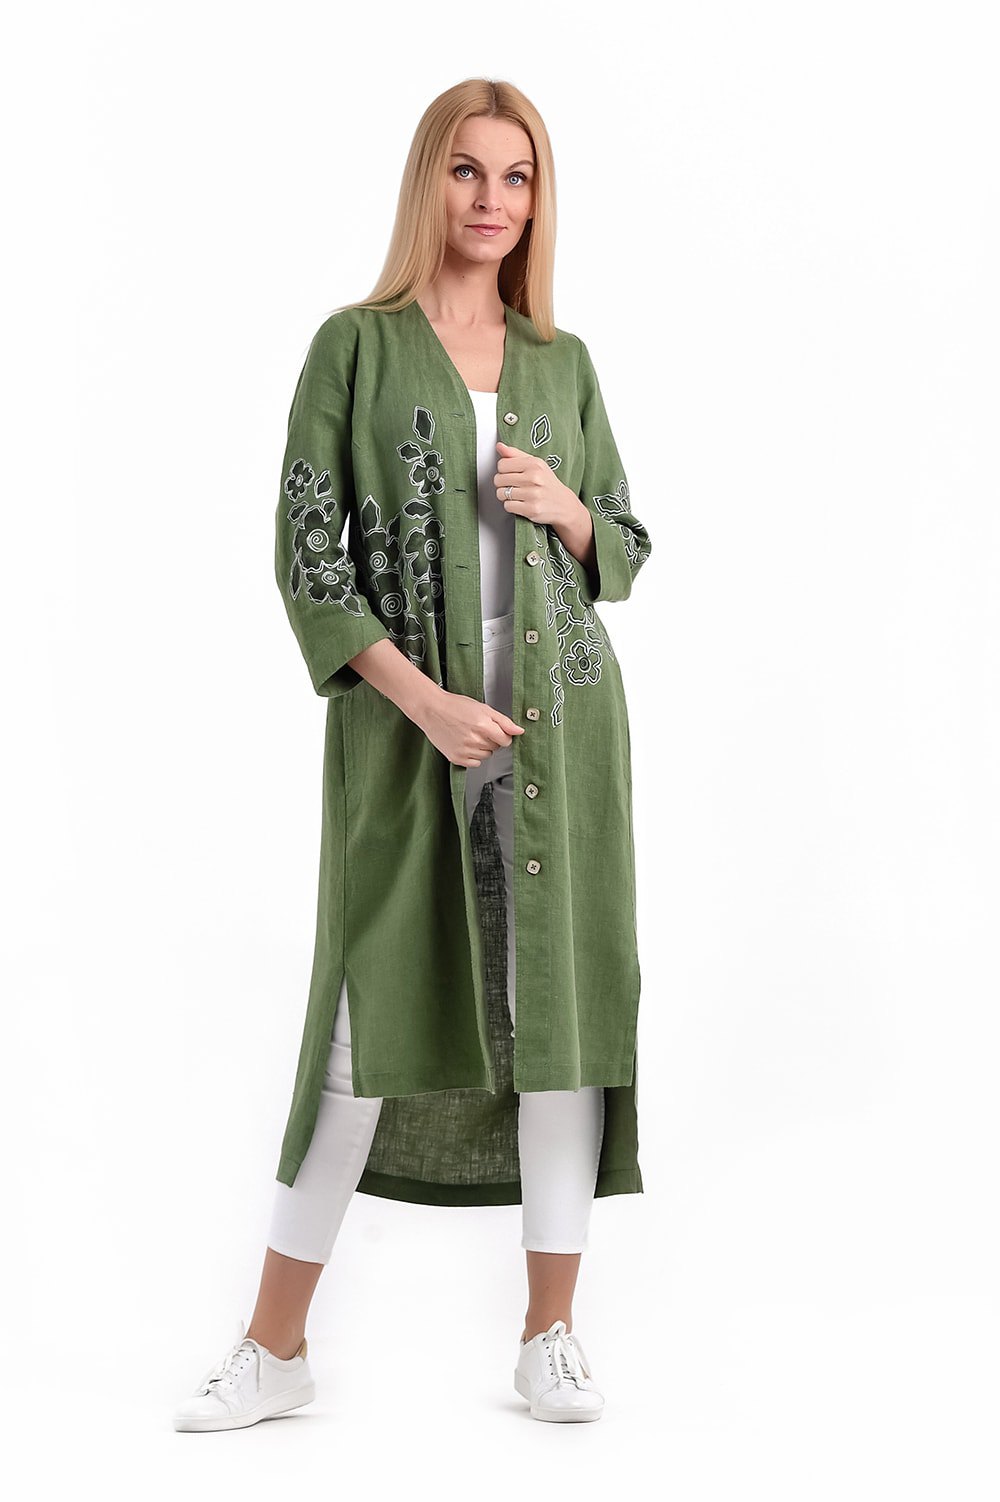 Платье женское "Халат на пуговицах" модель 443/1 светло-зеленый